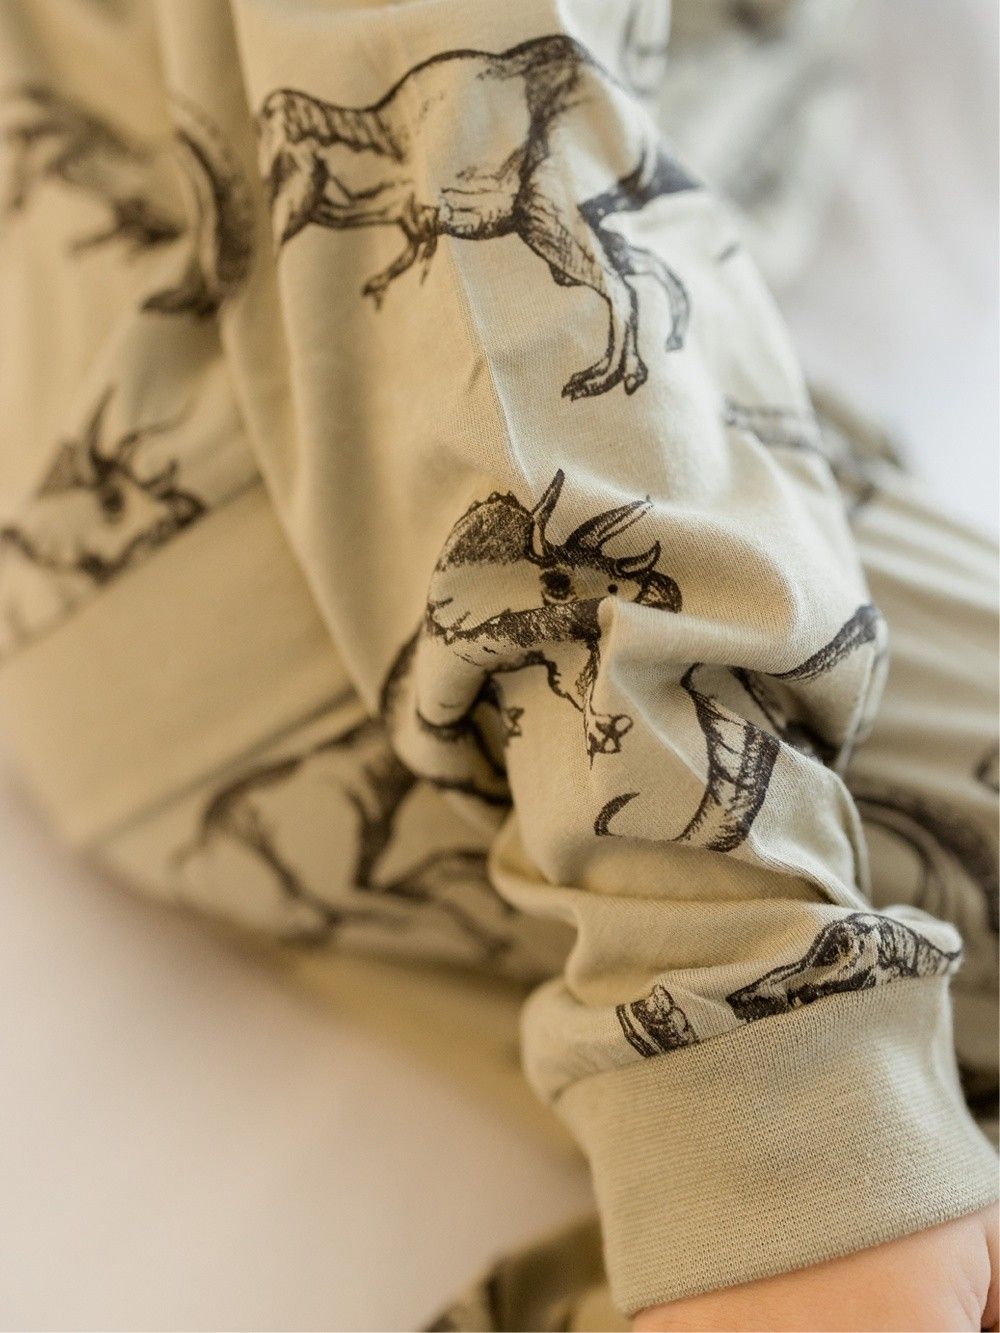 Pyjamas  DINOSAURUS